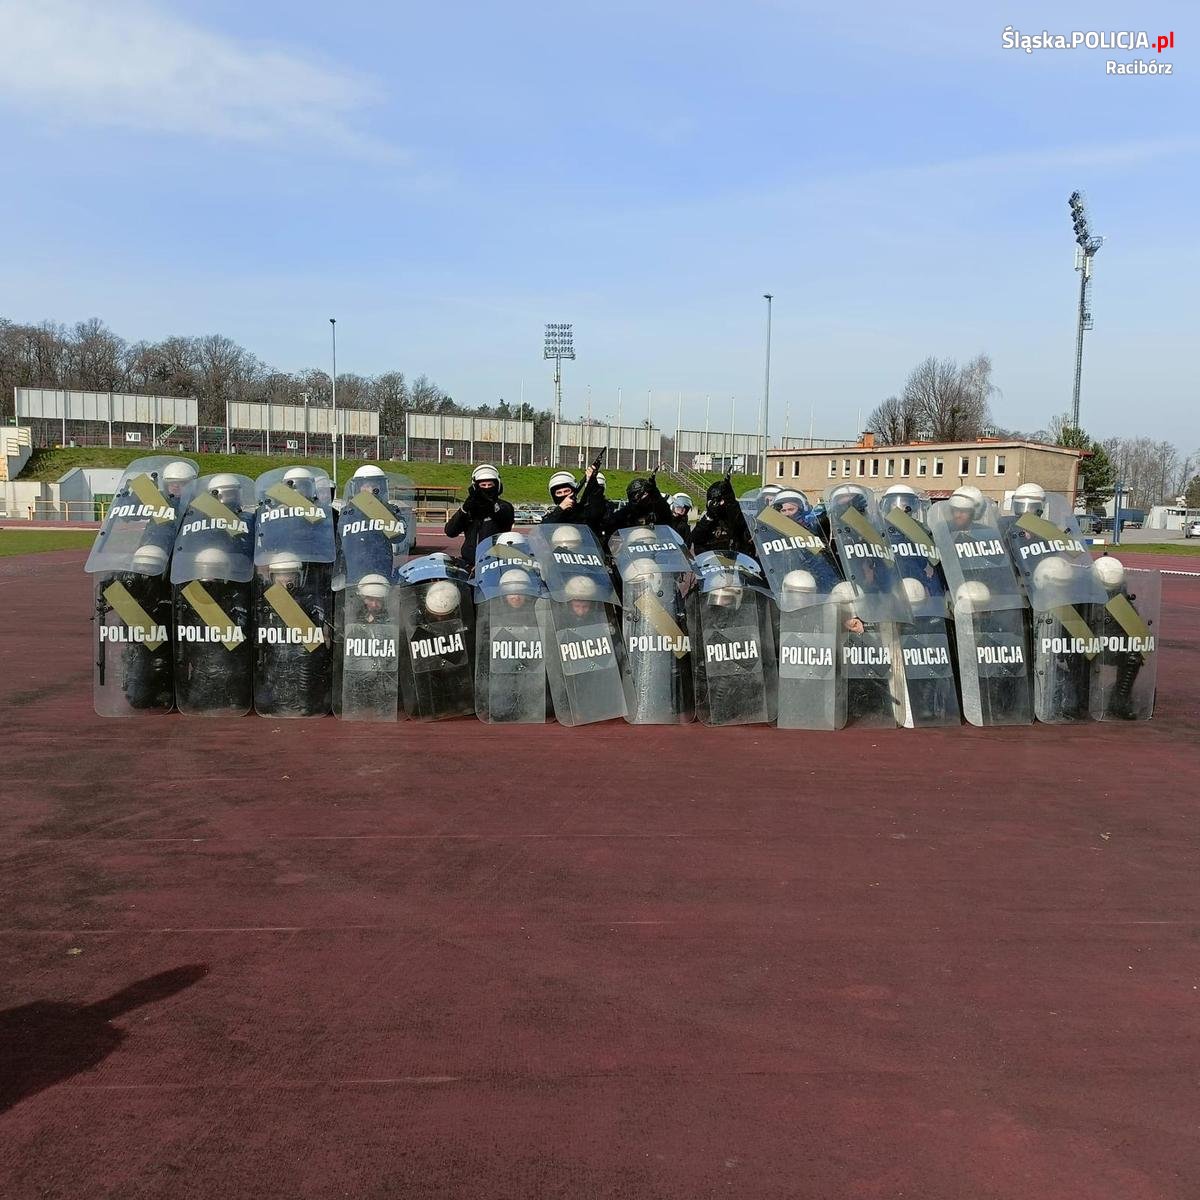 Policjanci z Raciborza ćwiczyli na stadionie [ZDJĘCIA]